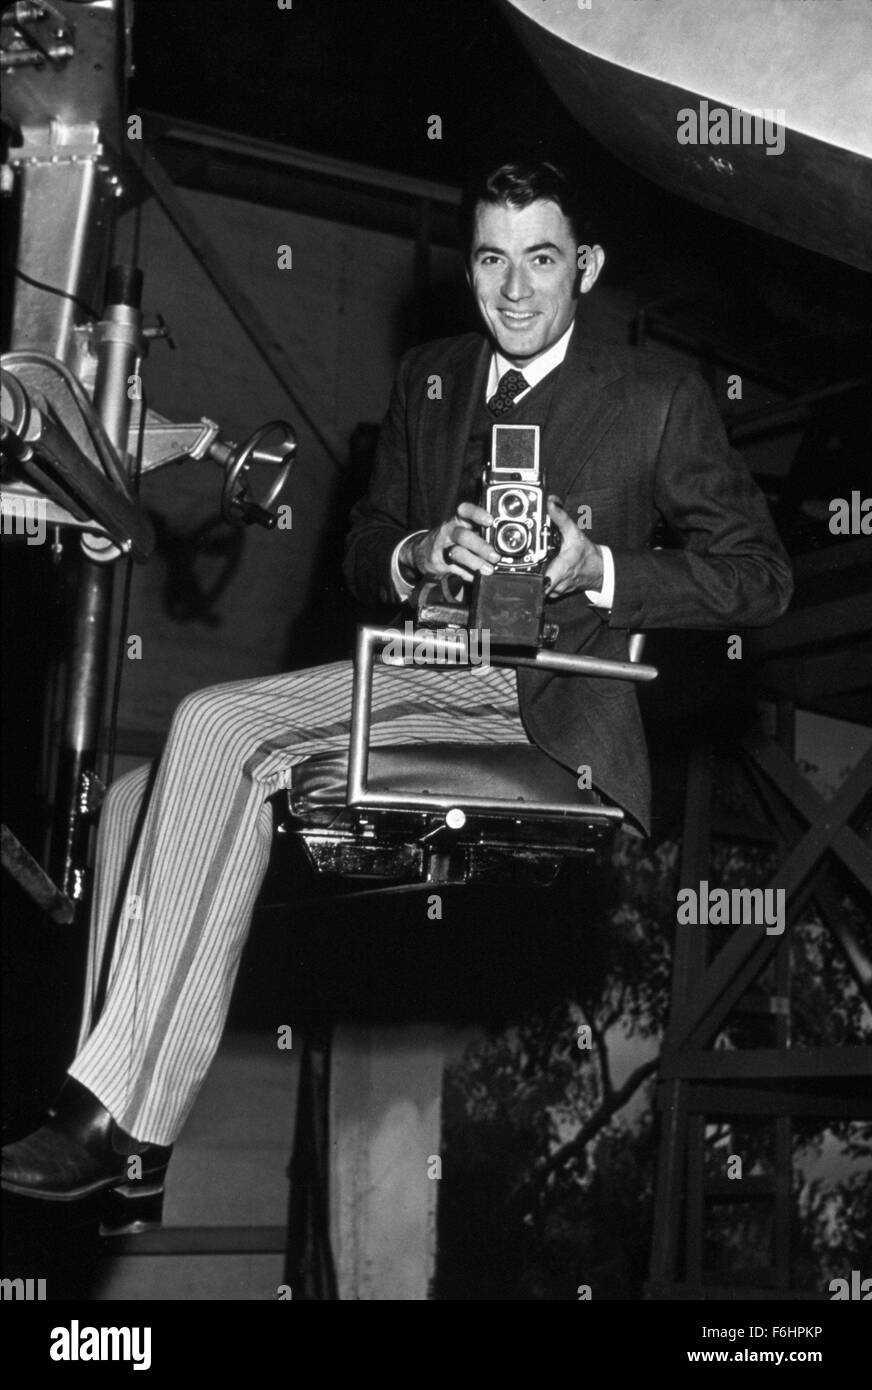 1949, le titre du film : grand pécheur, Directeur : ROBERT SIODMAK, Photo : derrière la scène, maintenez QUI POSENT (caméras), cinéma, Gregory Peck. (Crédit Image : SNAP) Banque D'Images